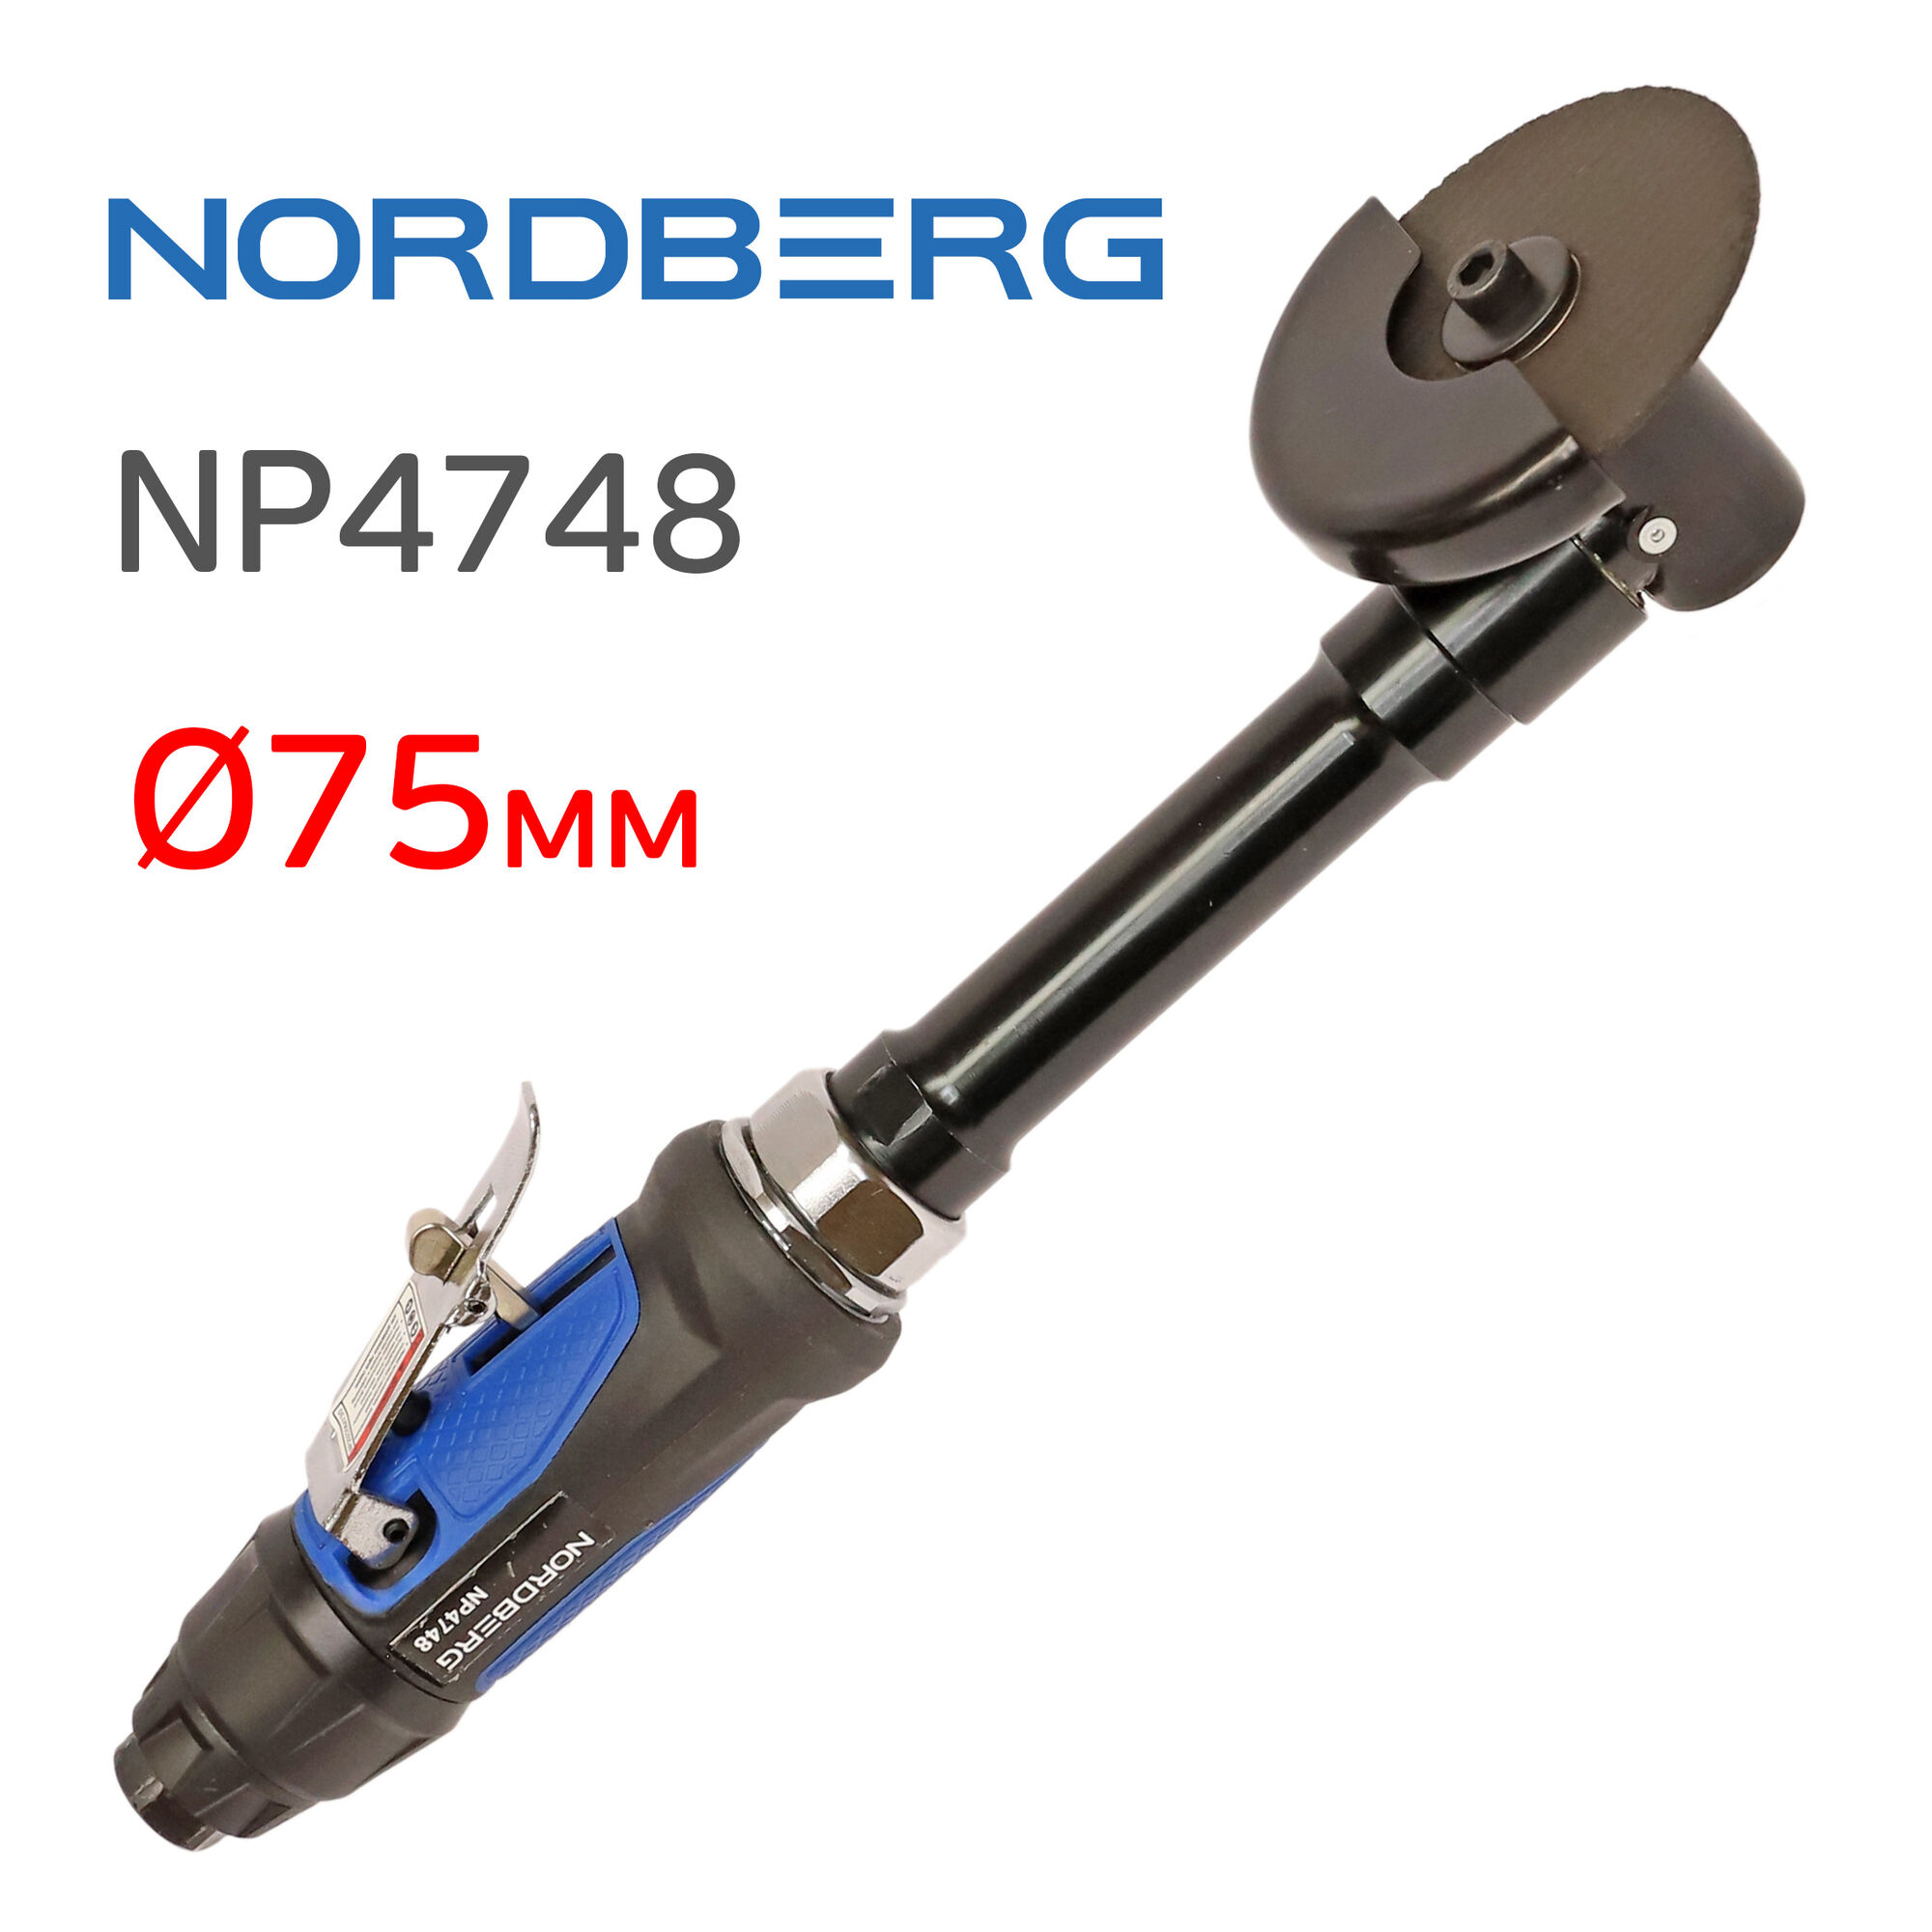 Отрезная удлиненная машинка Nordberg NP4748 торцевая пневматическая